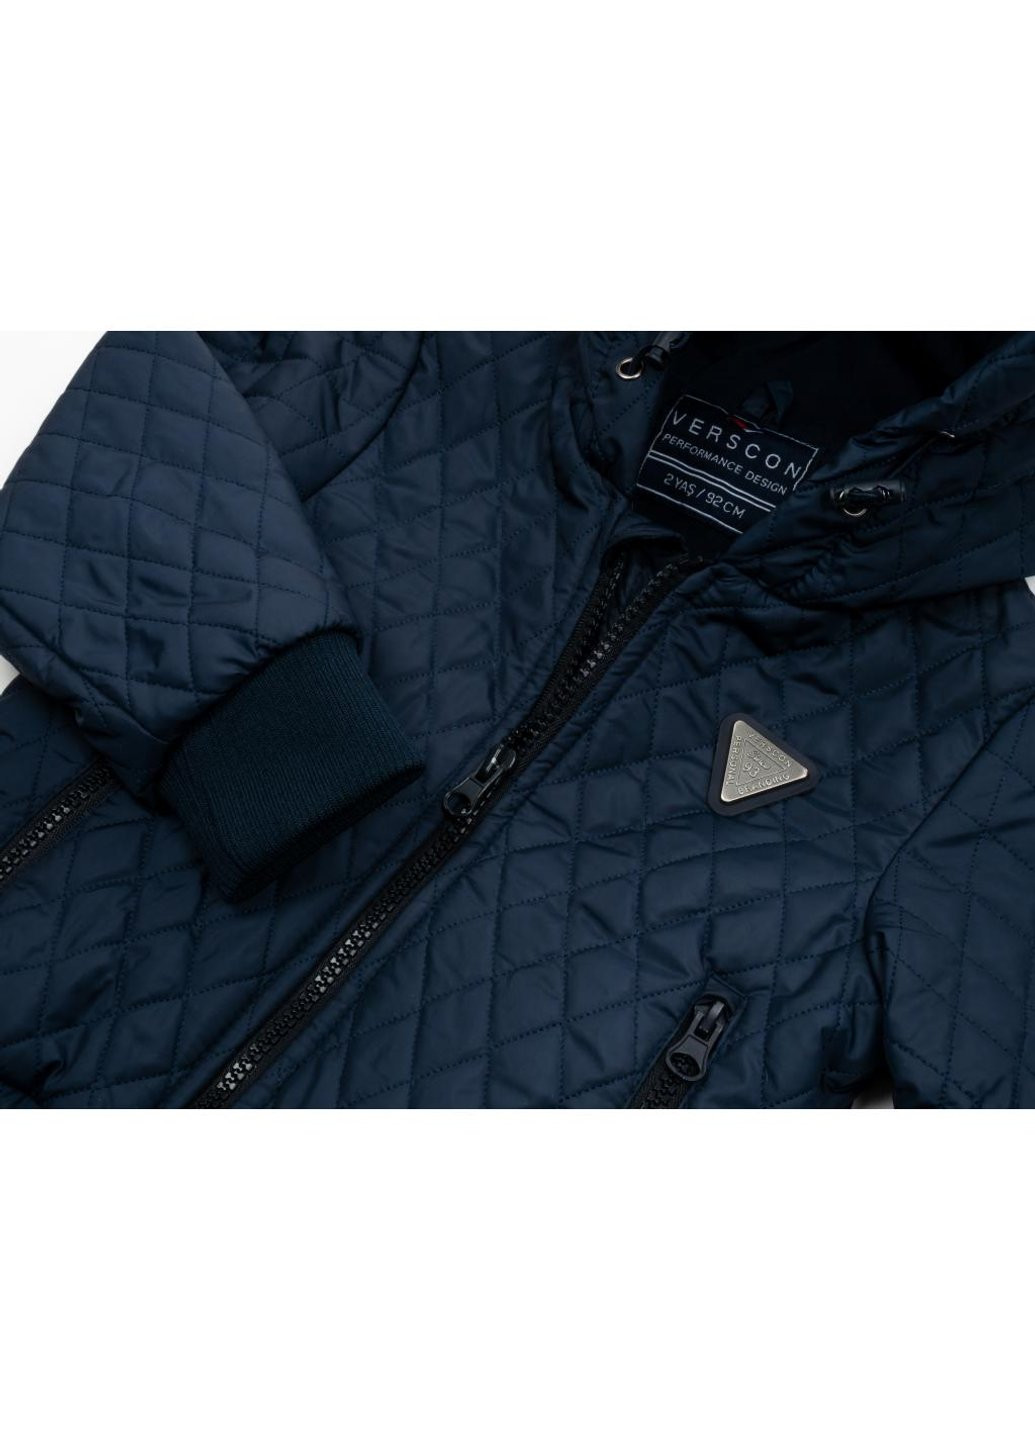 Голубая демисезонная куртка стеганая (3439-110b-blue) Verscon